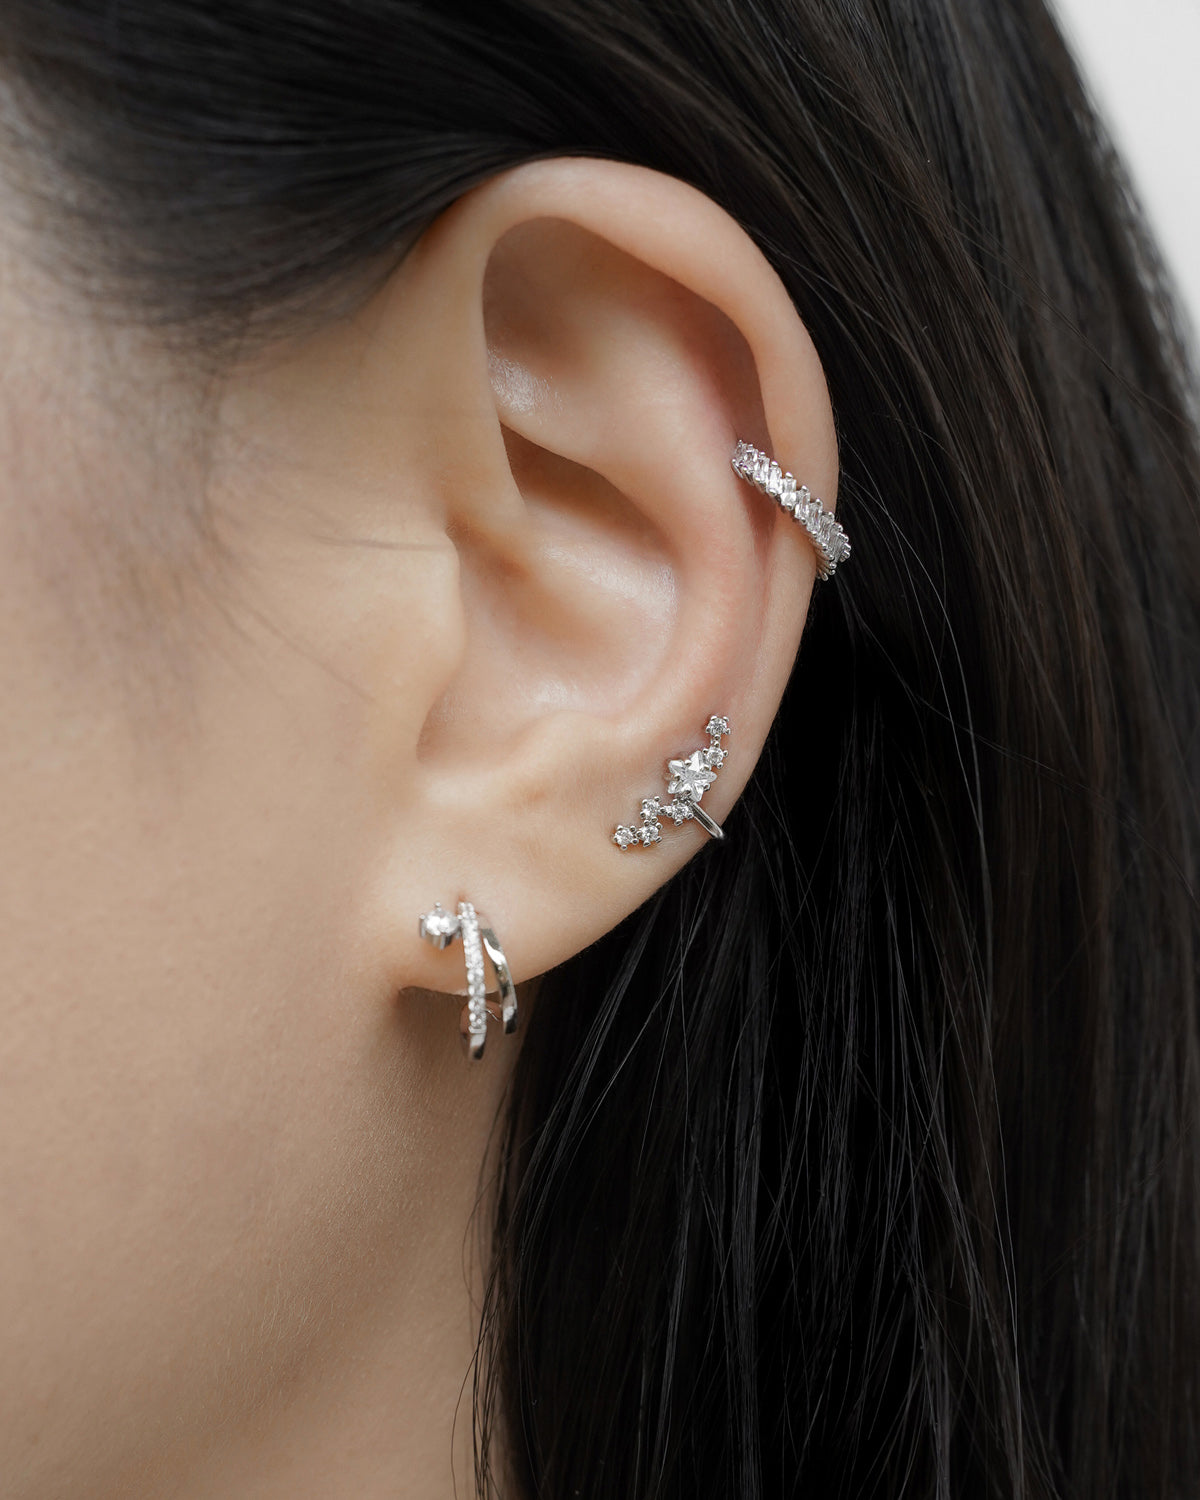 Celestial Crystal Ear Cuff in Gold | Jewellery by Astrid & Miyu